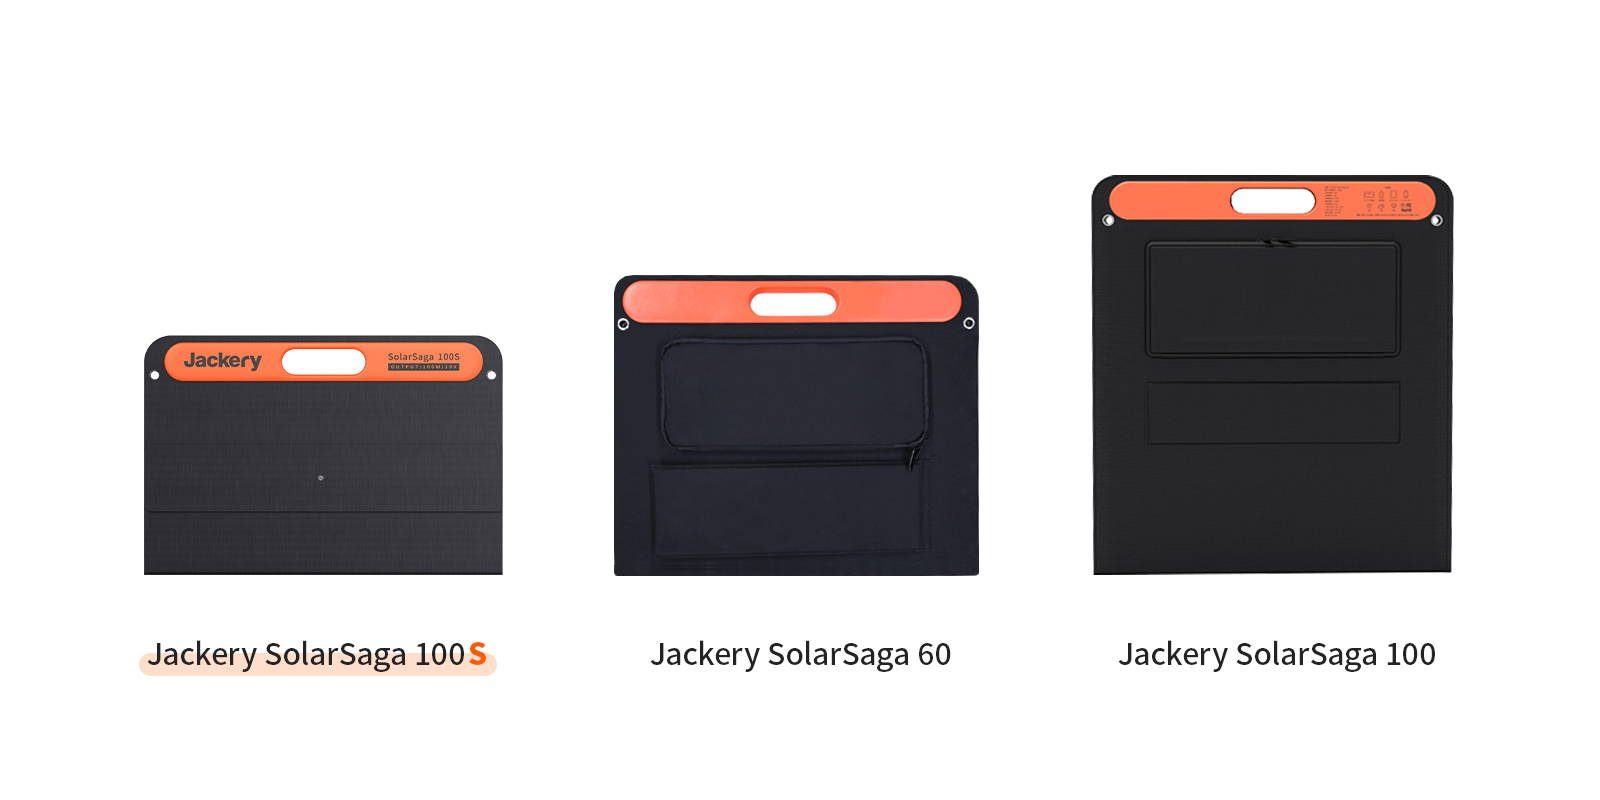 Jackery SolarSaga 100Sは、従来のソーラーパネルと比べてサイズが小さくて持ち歩きやすい